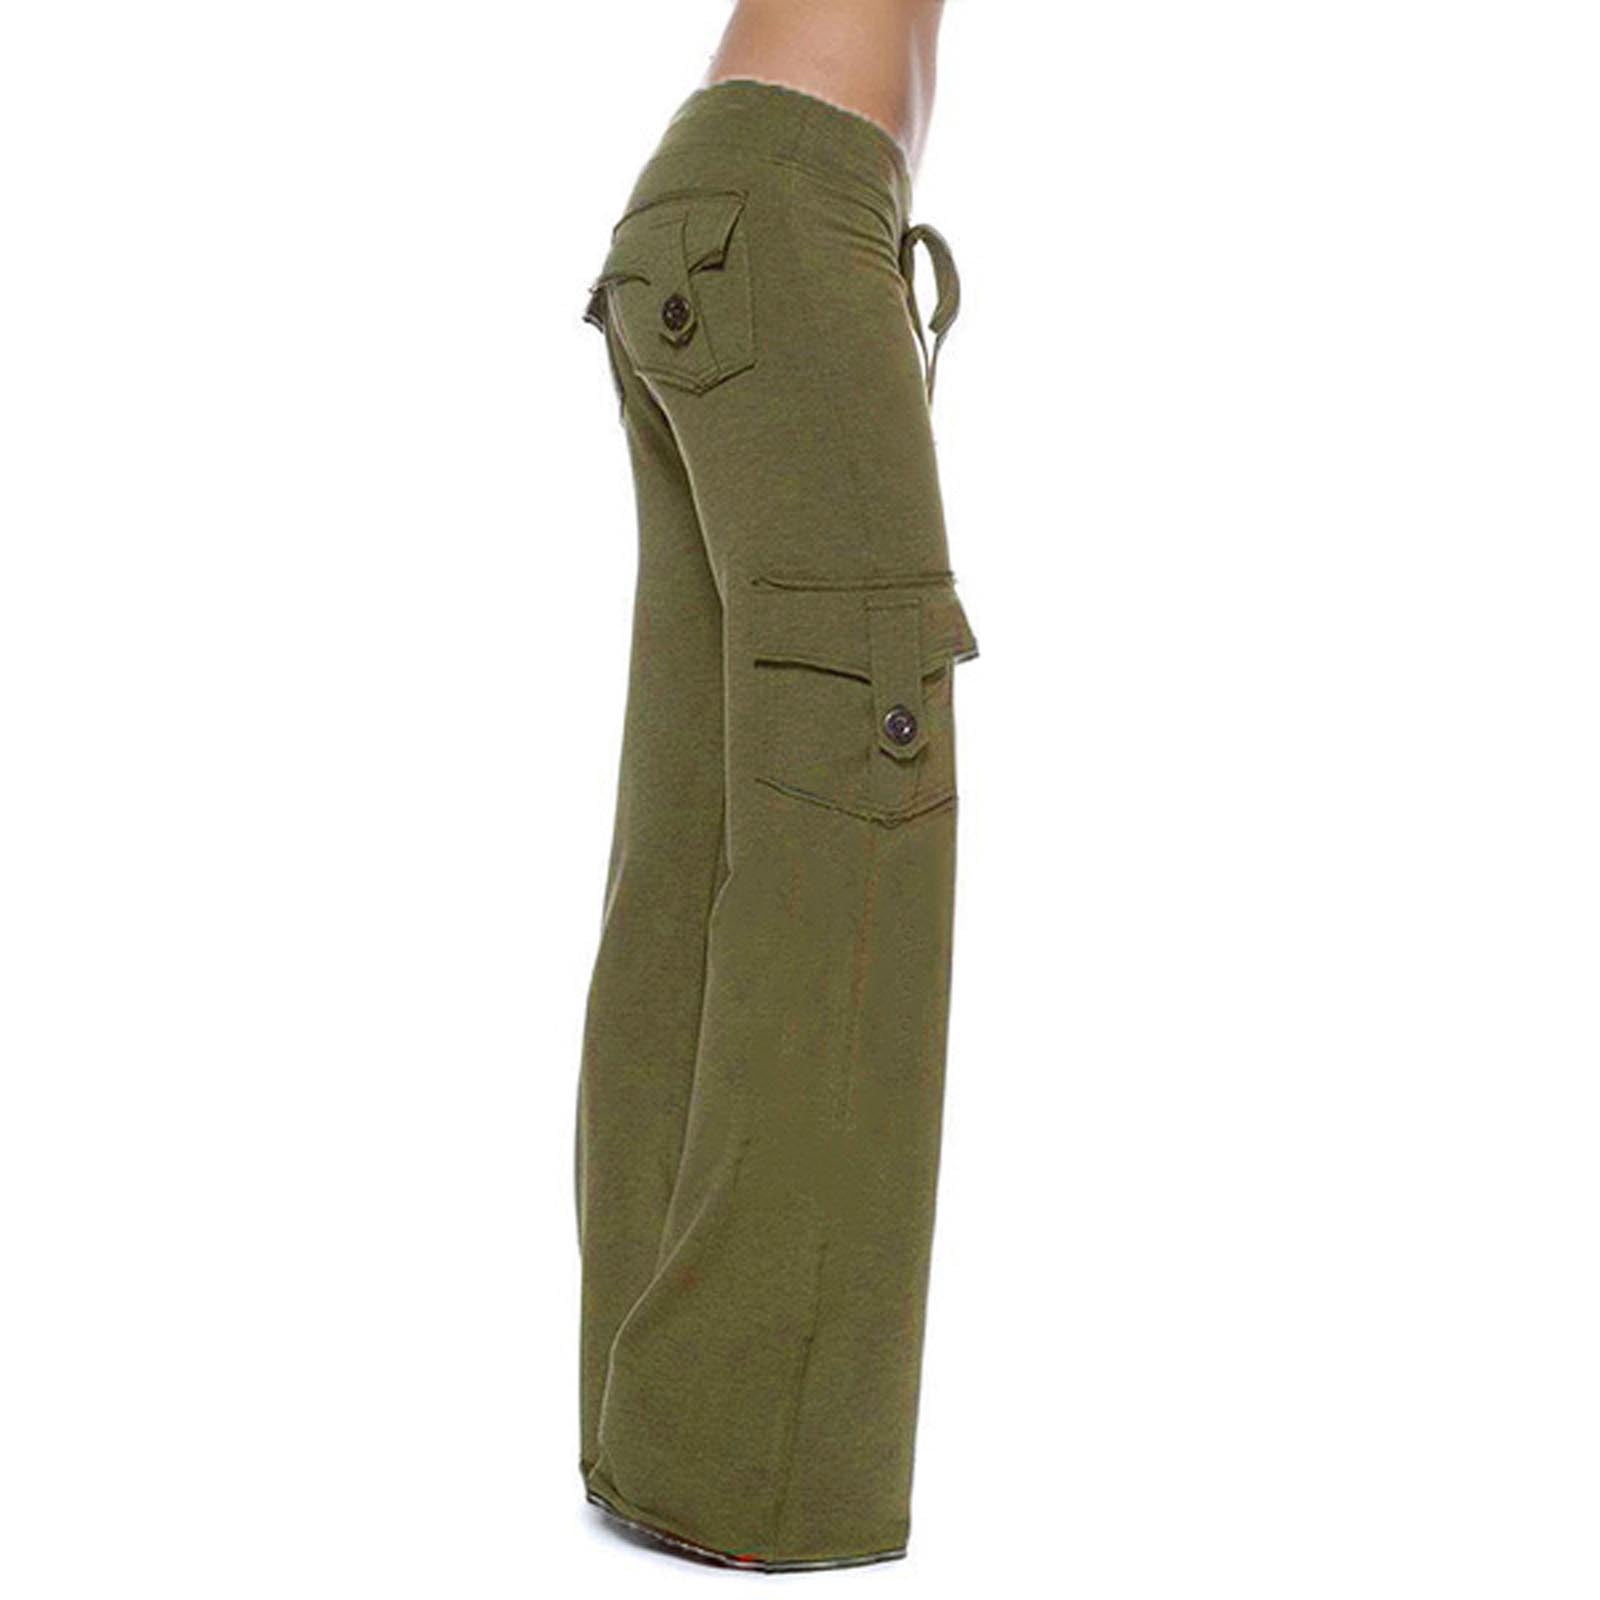 Cargo Pants For Women  Buy Cargo Joggers For Women online at Best Prices  in India  Flipkartcom